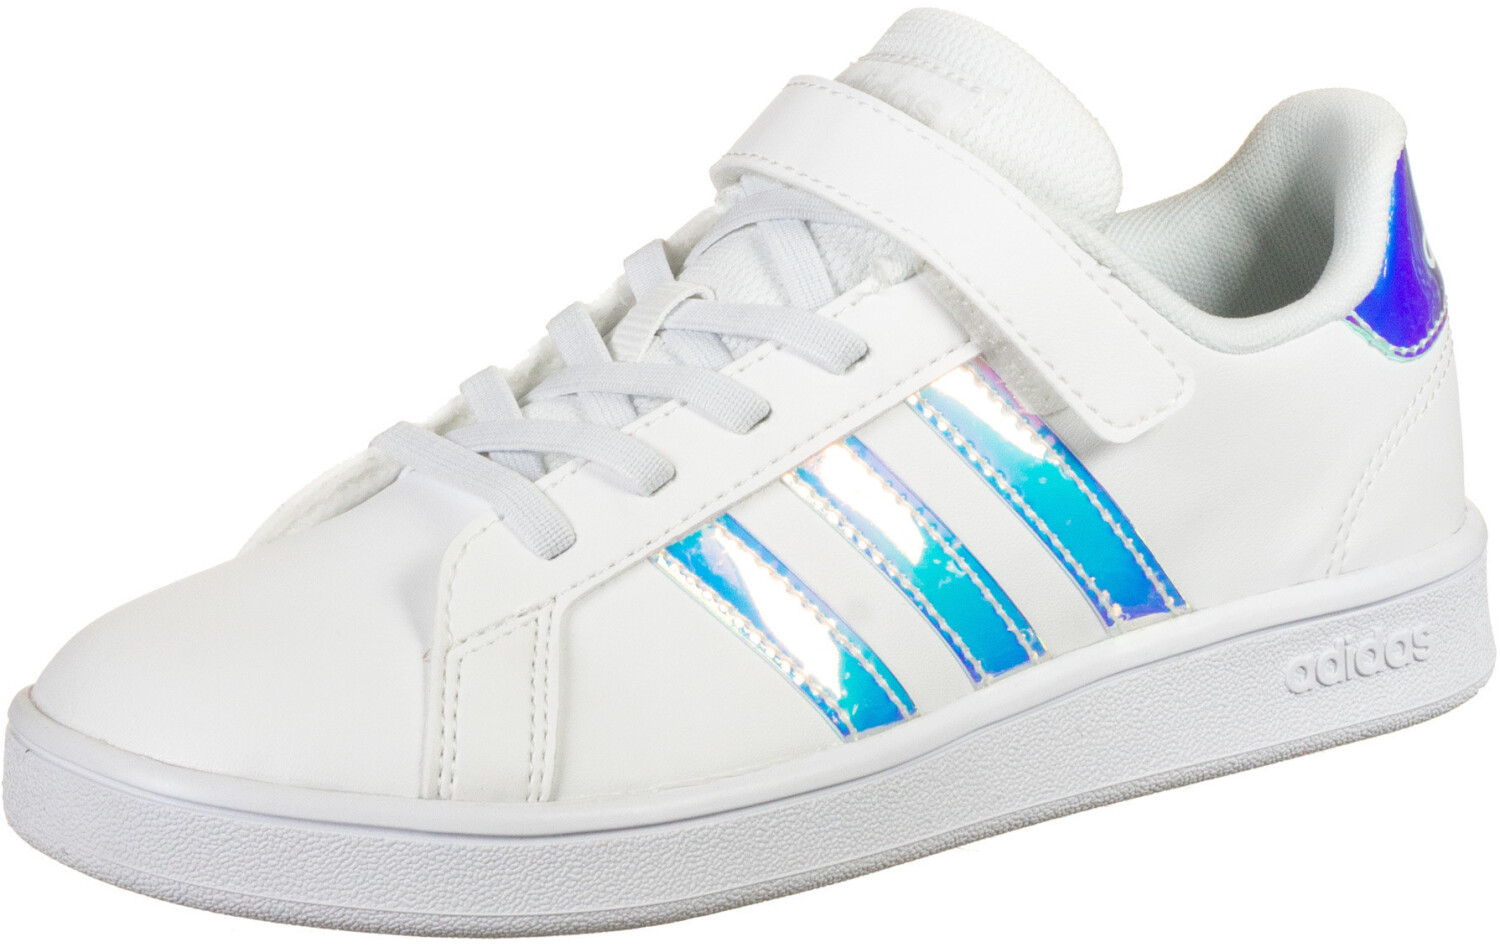 Adidas Grand Court Kids white/silver (FW1275) a € 27 90 (oggi